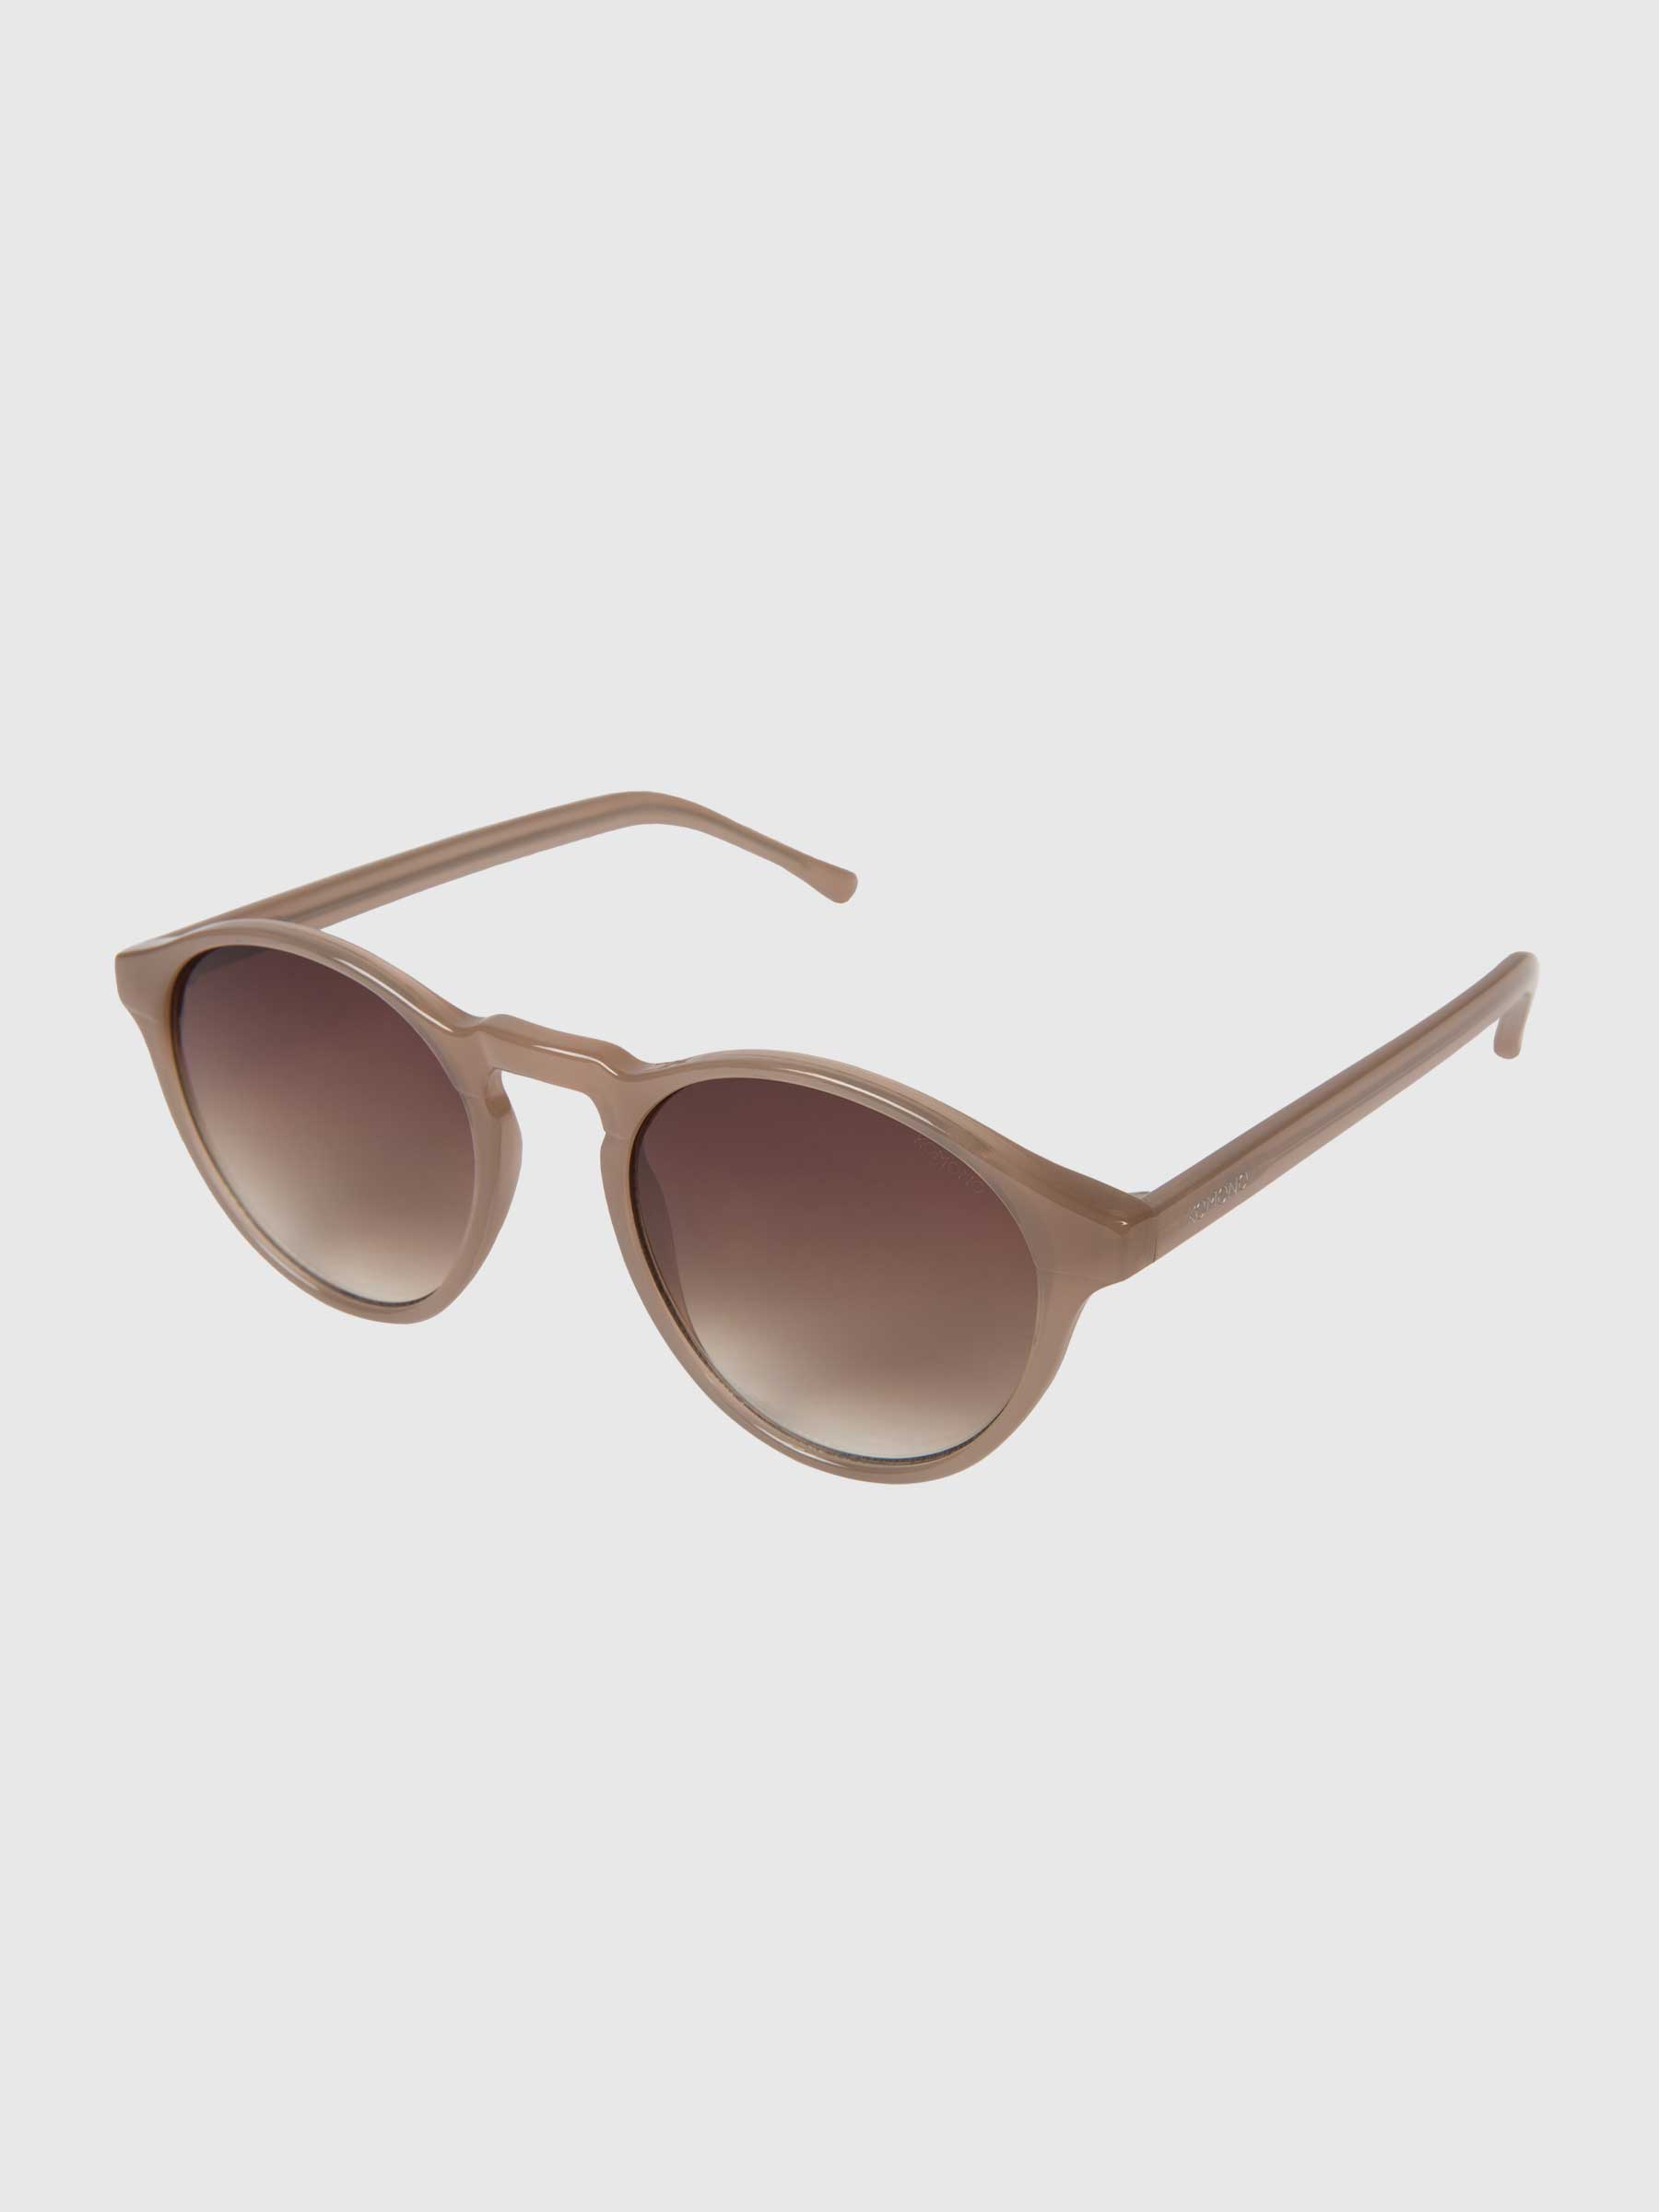 Devon Sahara Sunglasses KOM-S3204